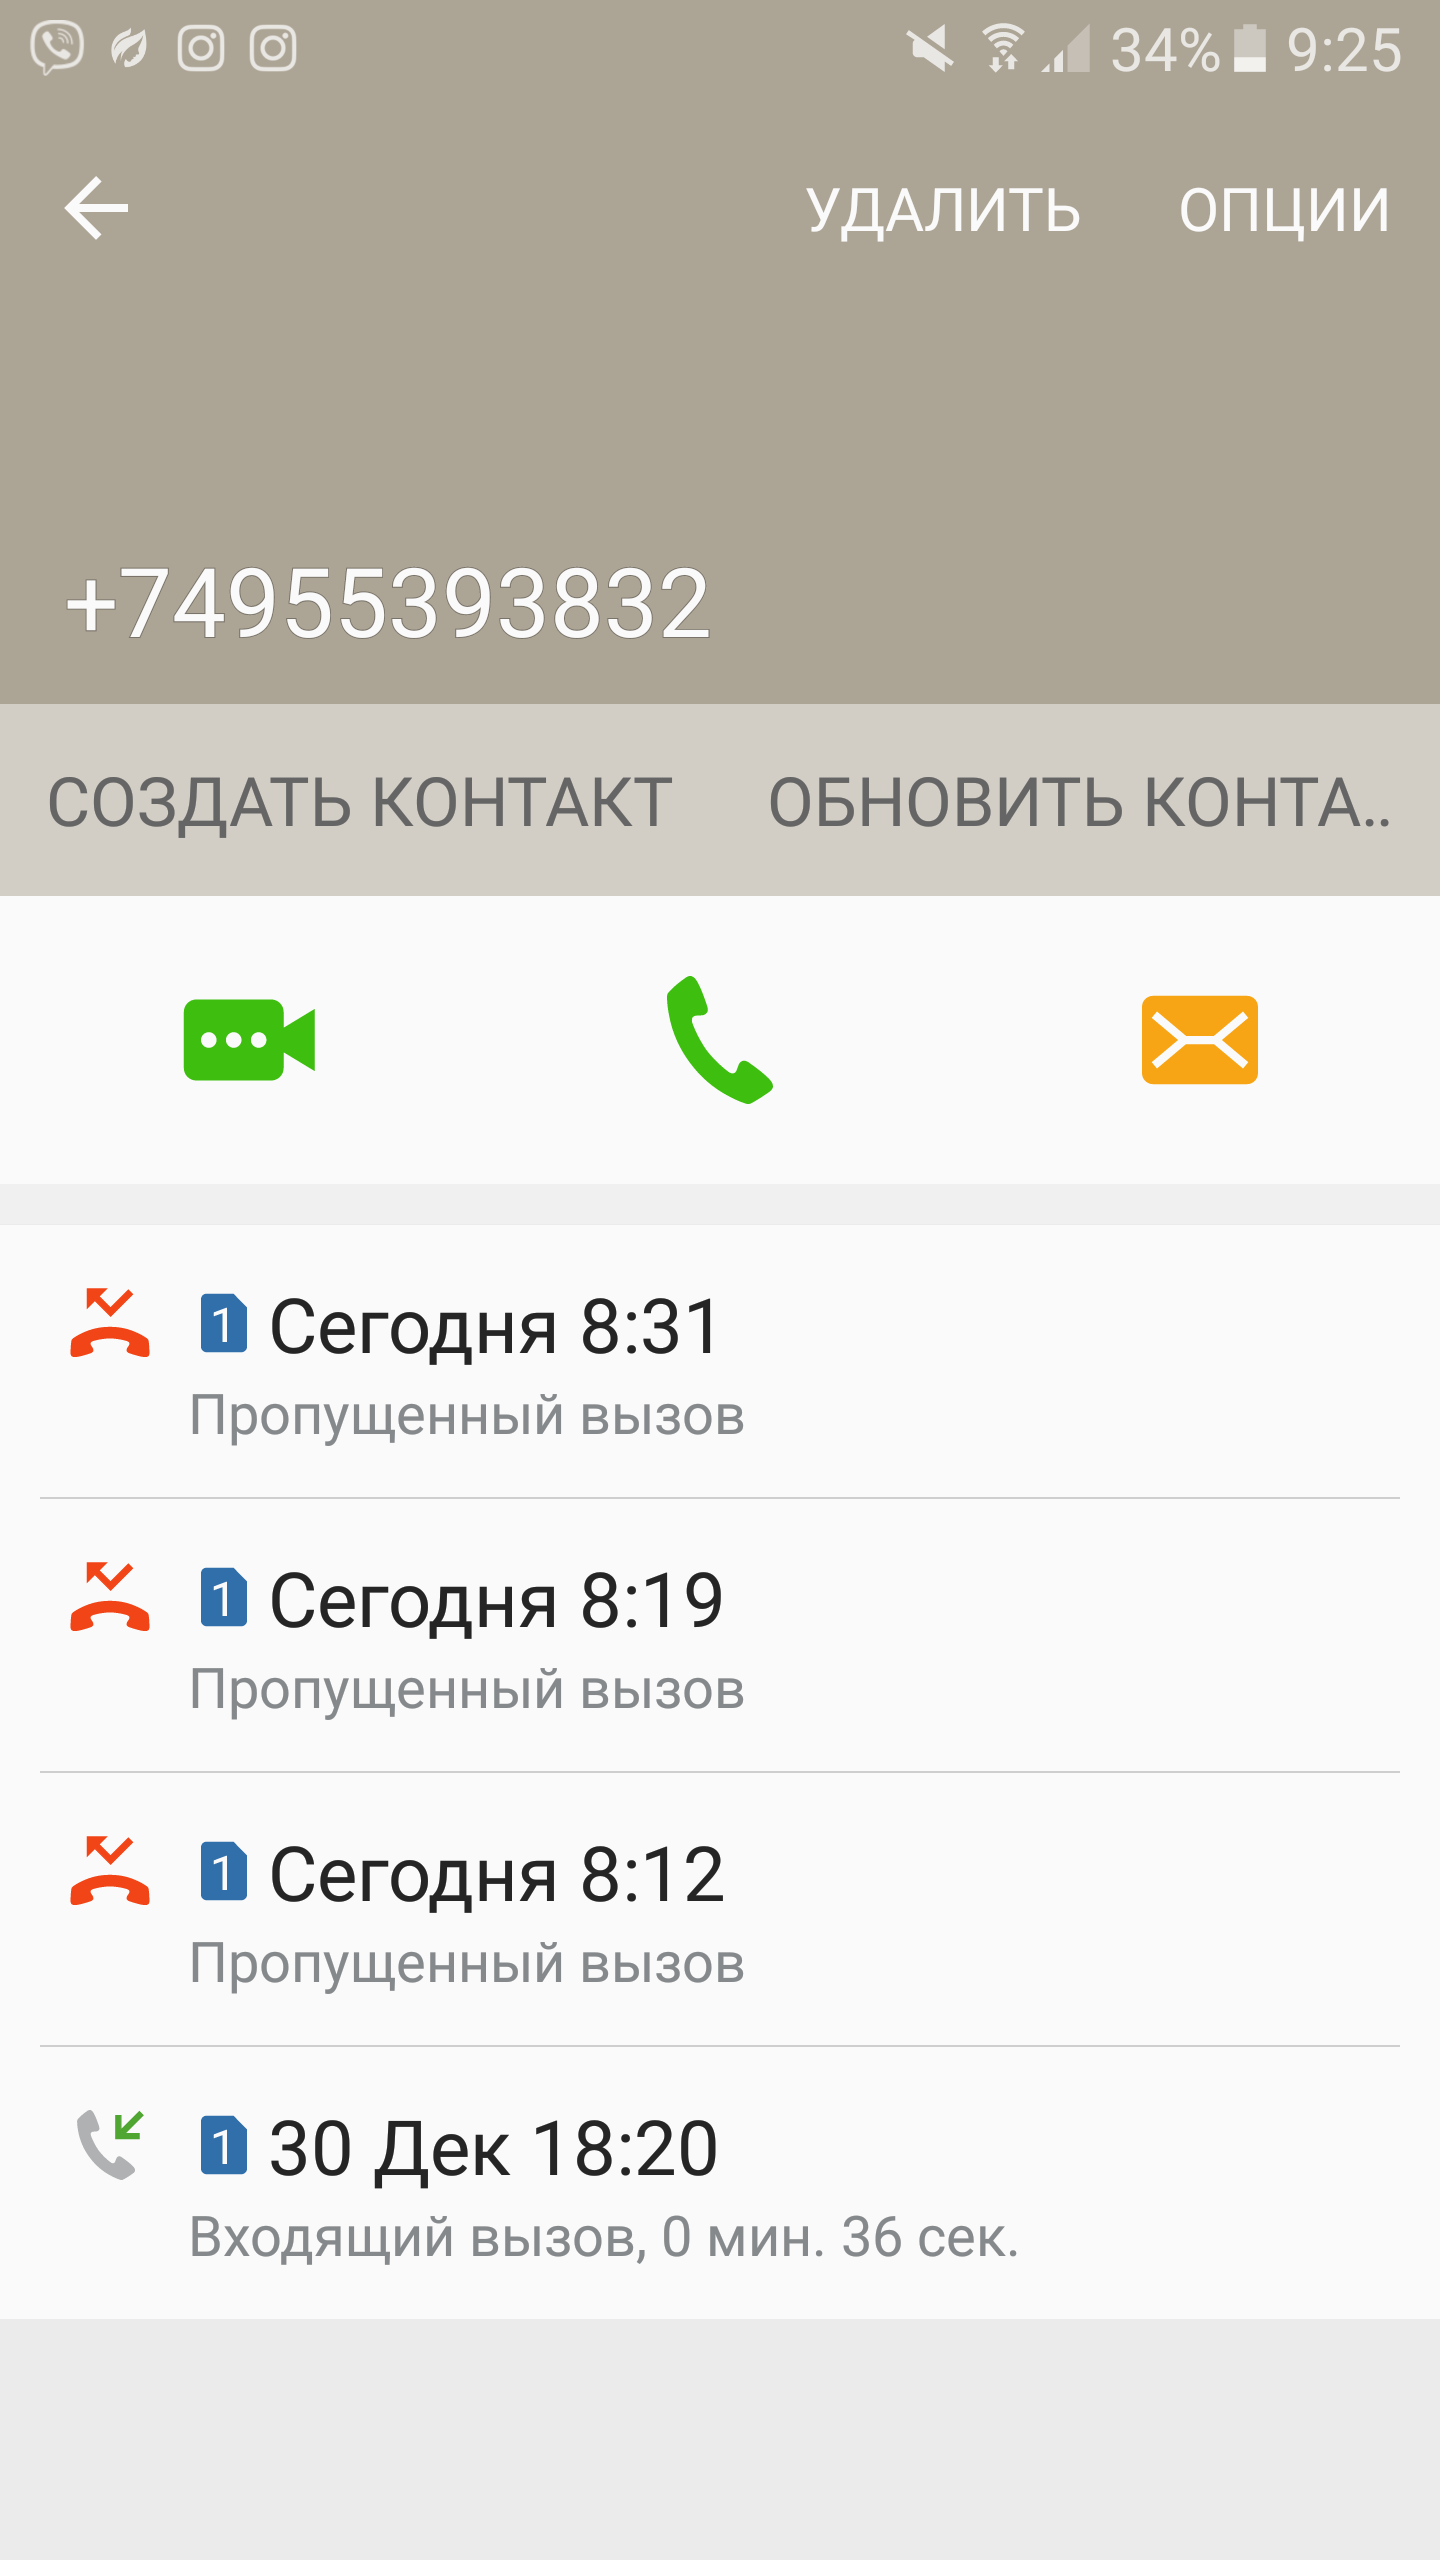 Саяногорск Инфо - screenshot_20170112-092530.png, Скачано: 295